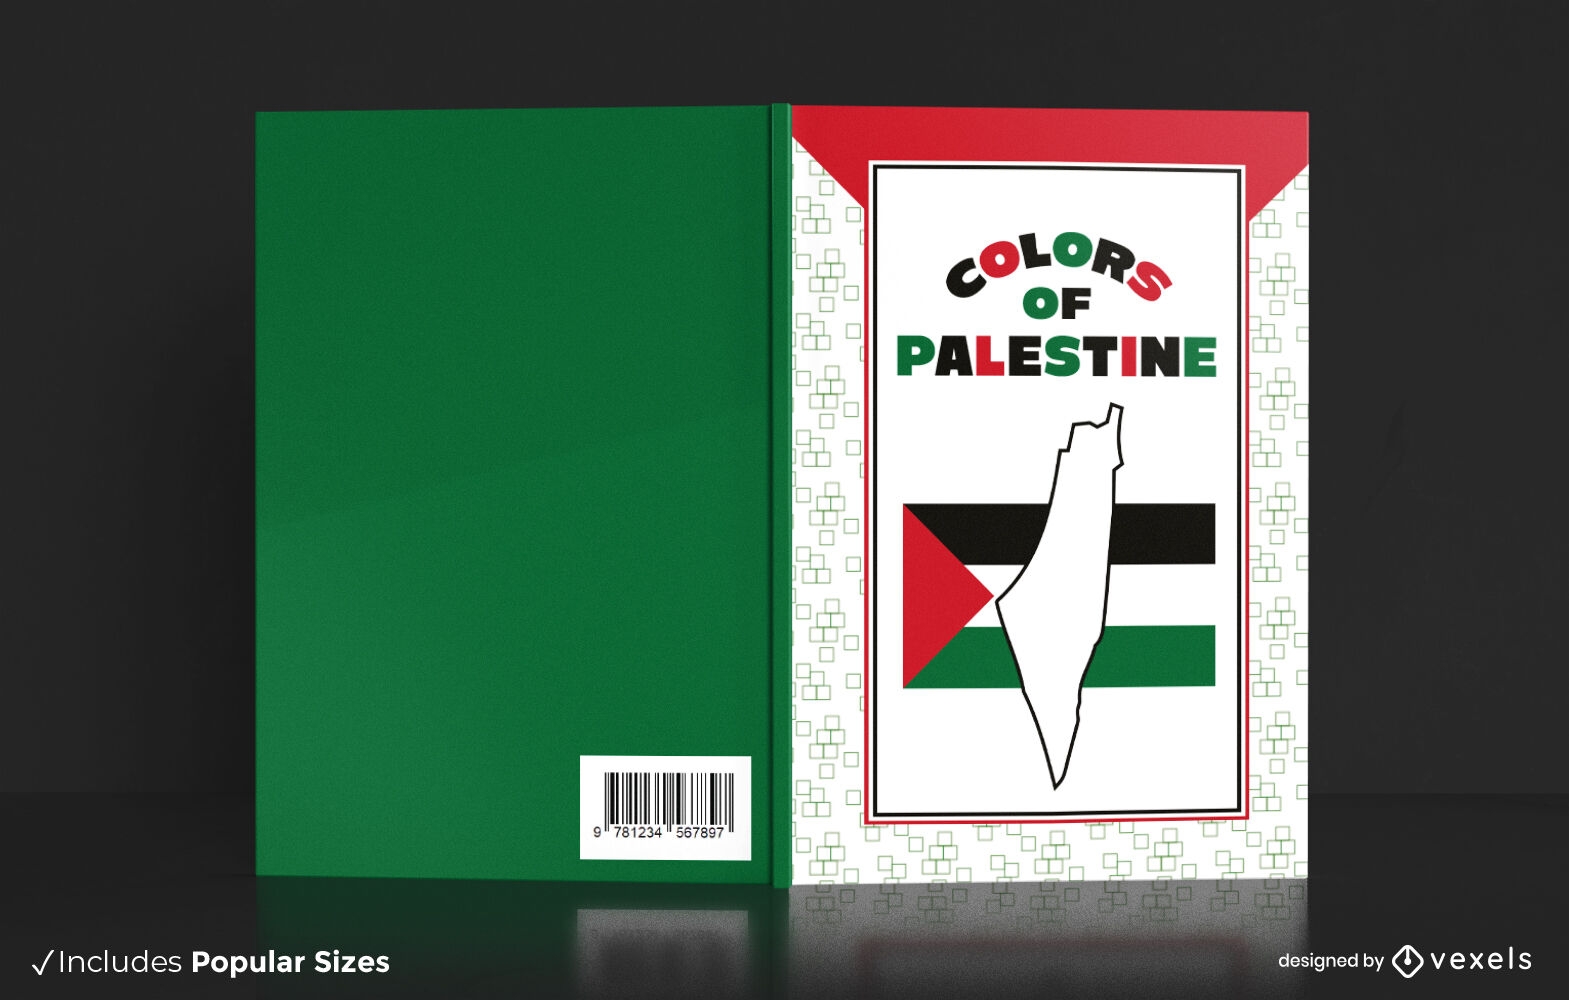 Palestine colors book cover design